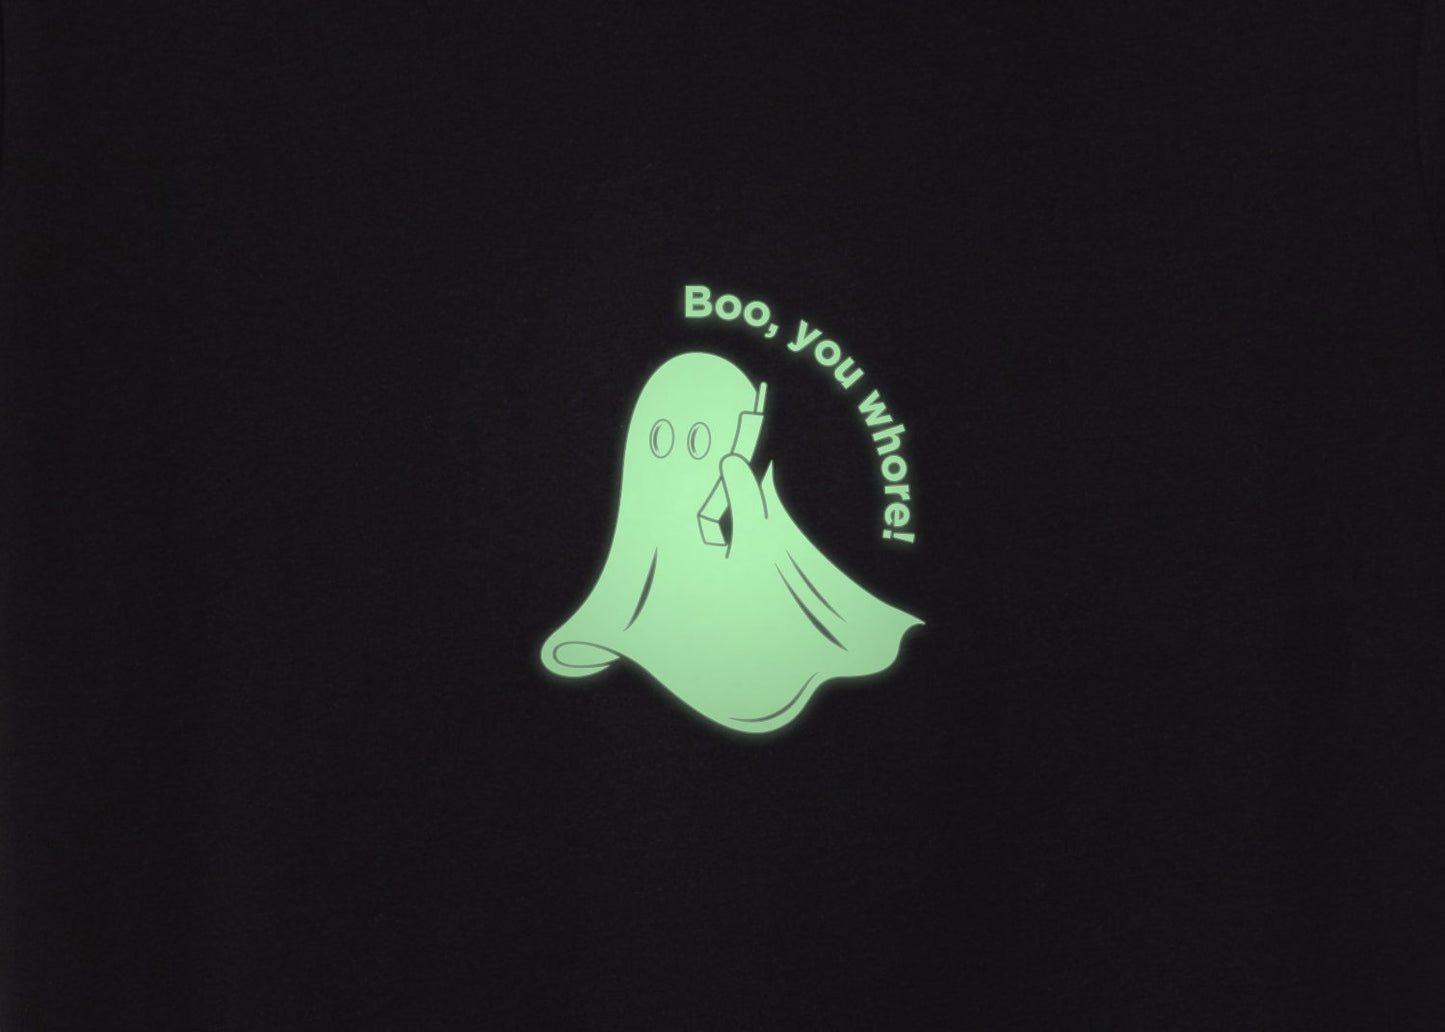 boo you WHRE fantasma - Brilla en la obscuridad - Stockholm Co. - Playera - halloween, hombre, mujer, otros, playera